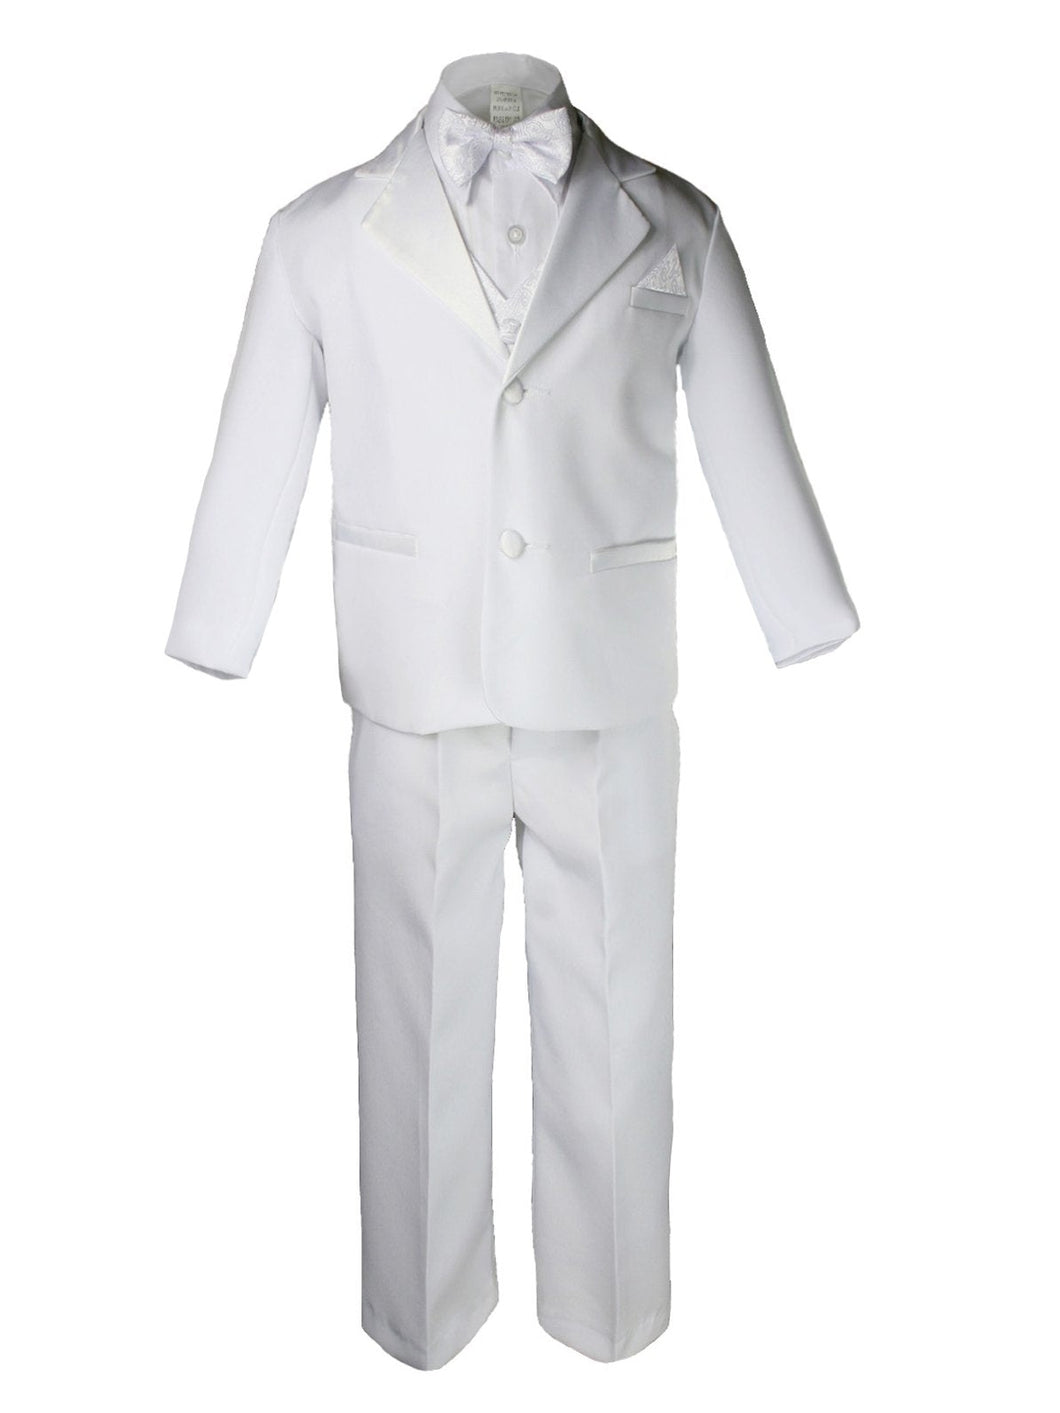 Boys 5 Piece Tuxedo Set - Includes Formal Jacket, Pants, Shirt, Vest & Bow Tie - White